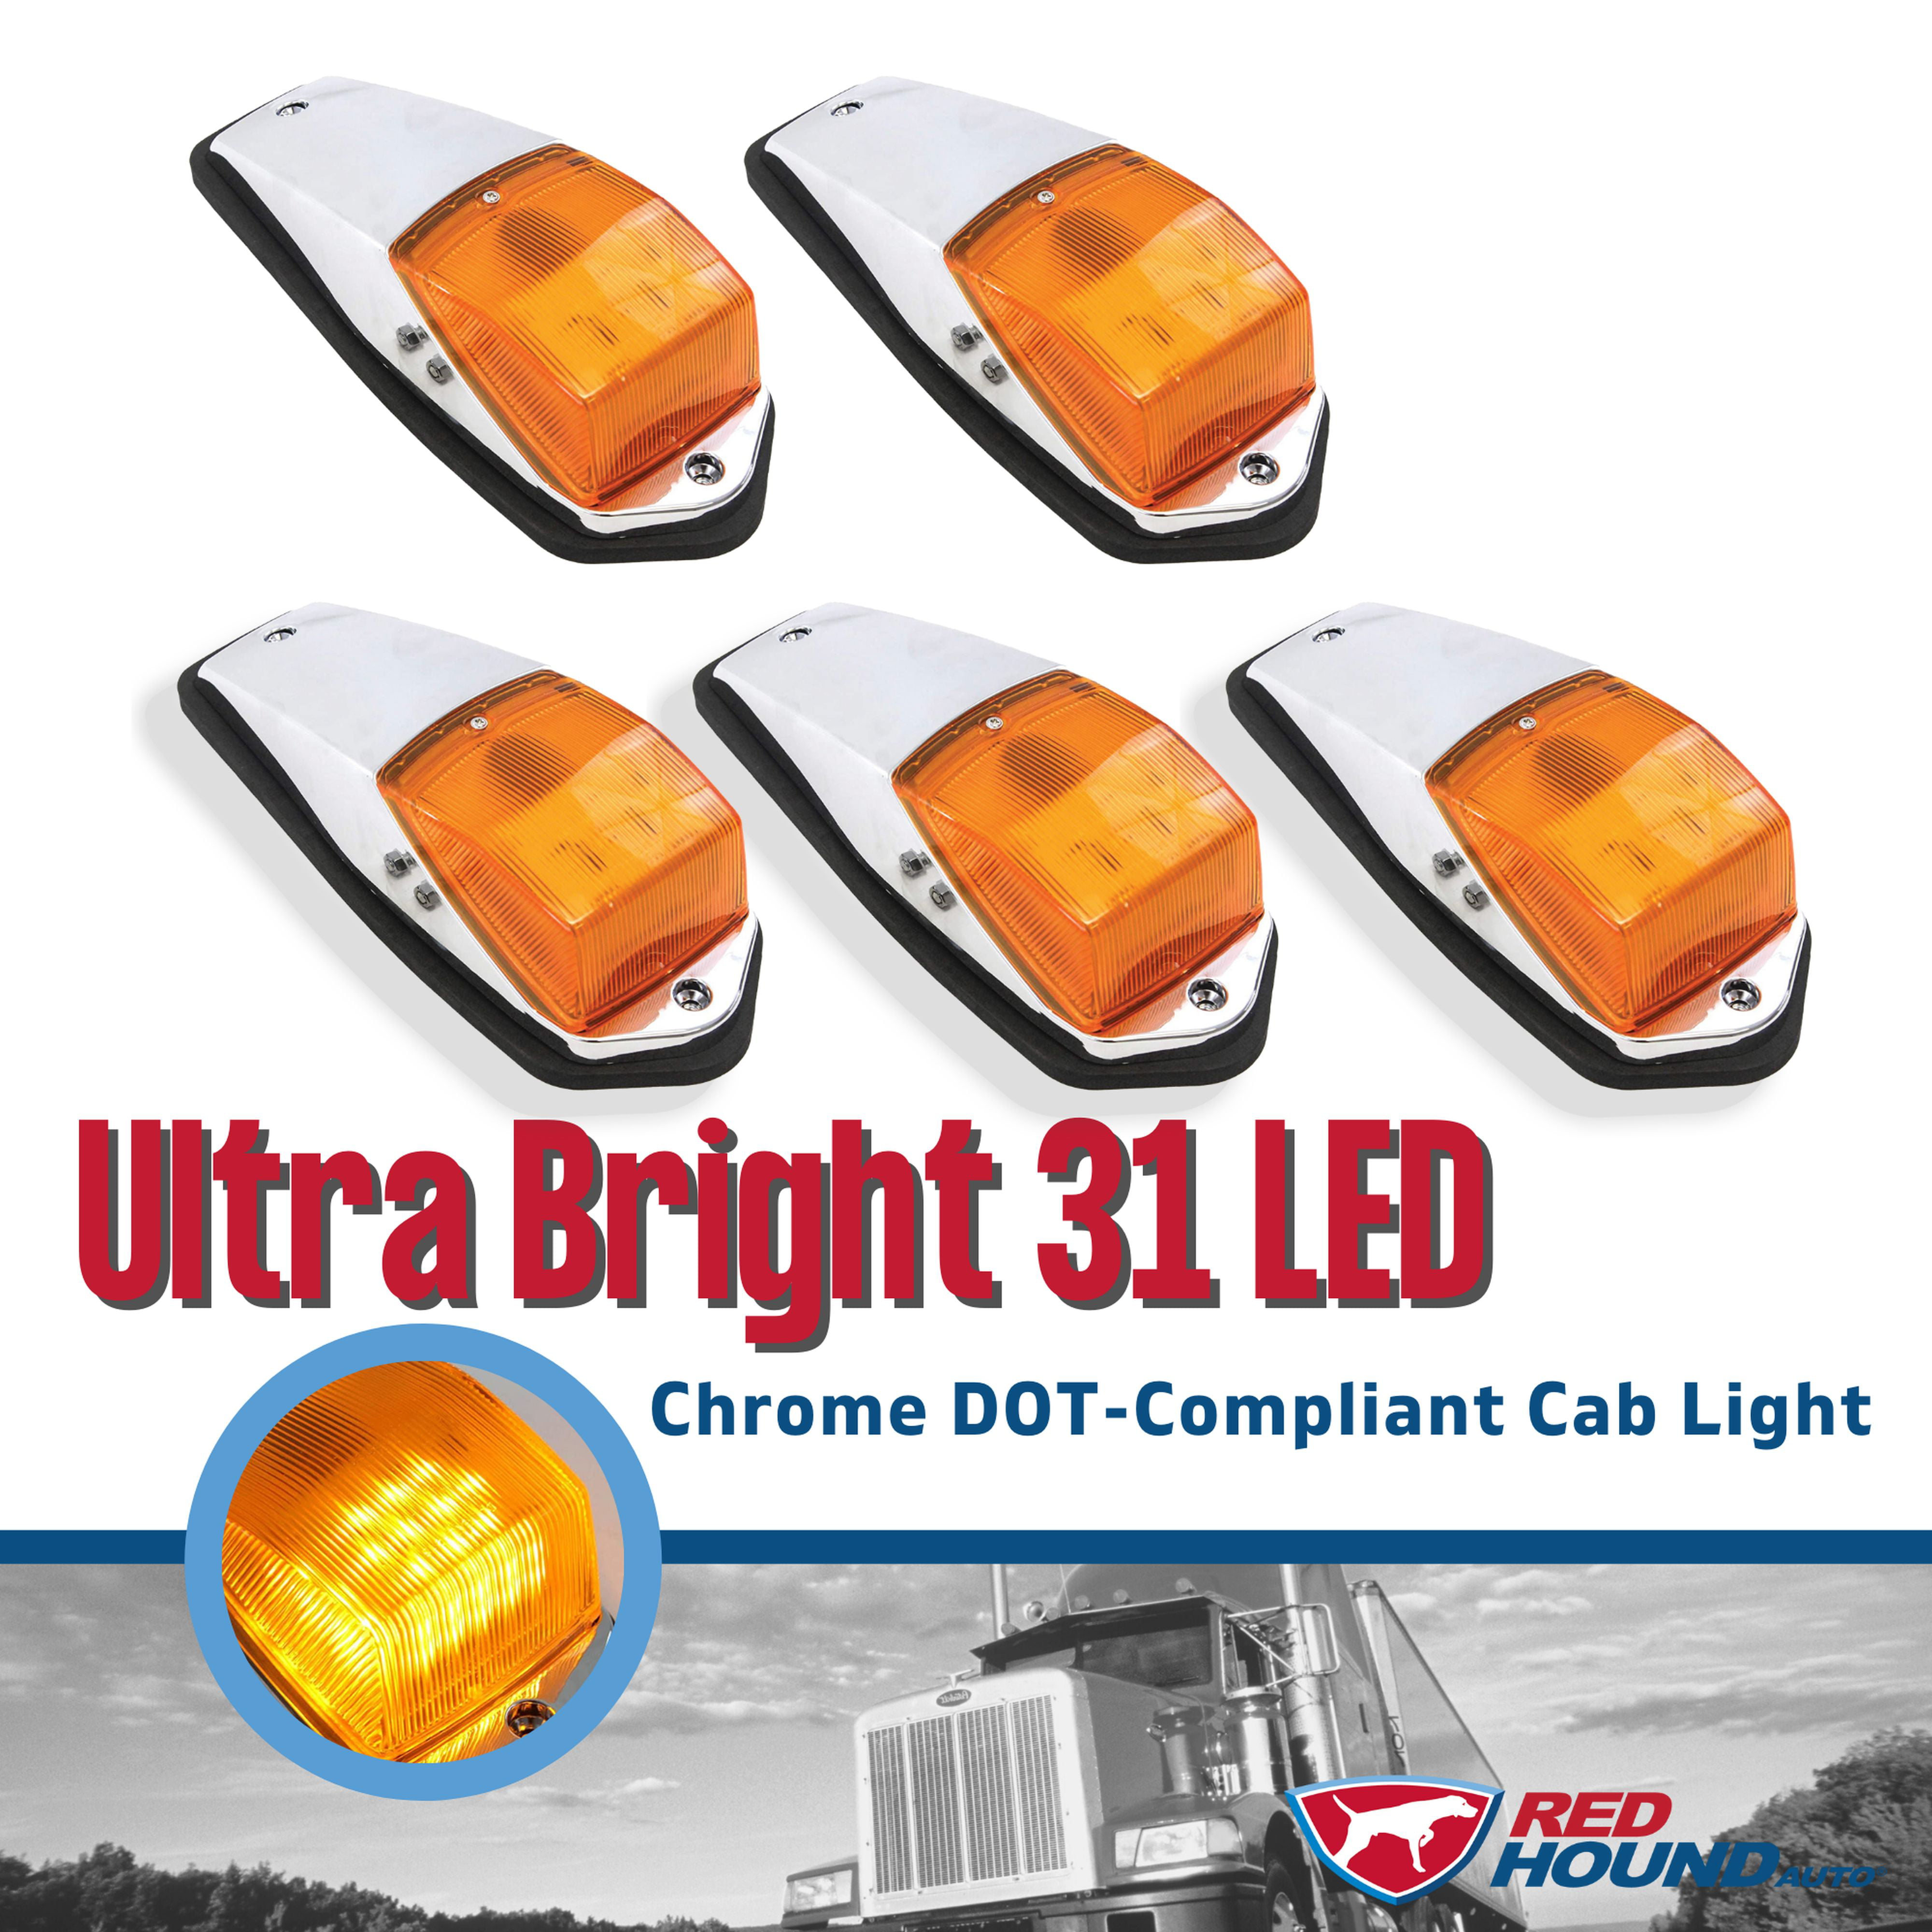 6 pcs Amber Chrome 31 LED Cab Marker Lights fits Peterbilt Kenworth Freightliner 